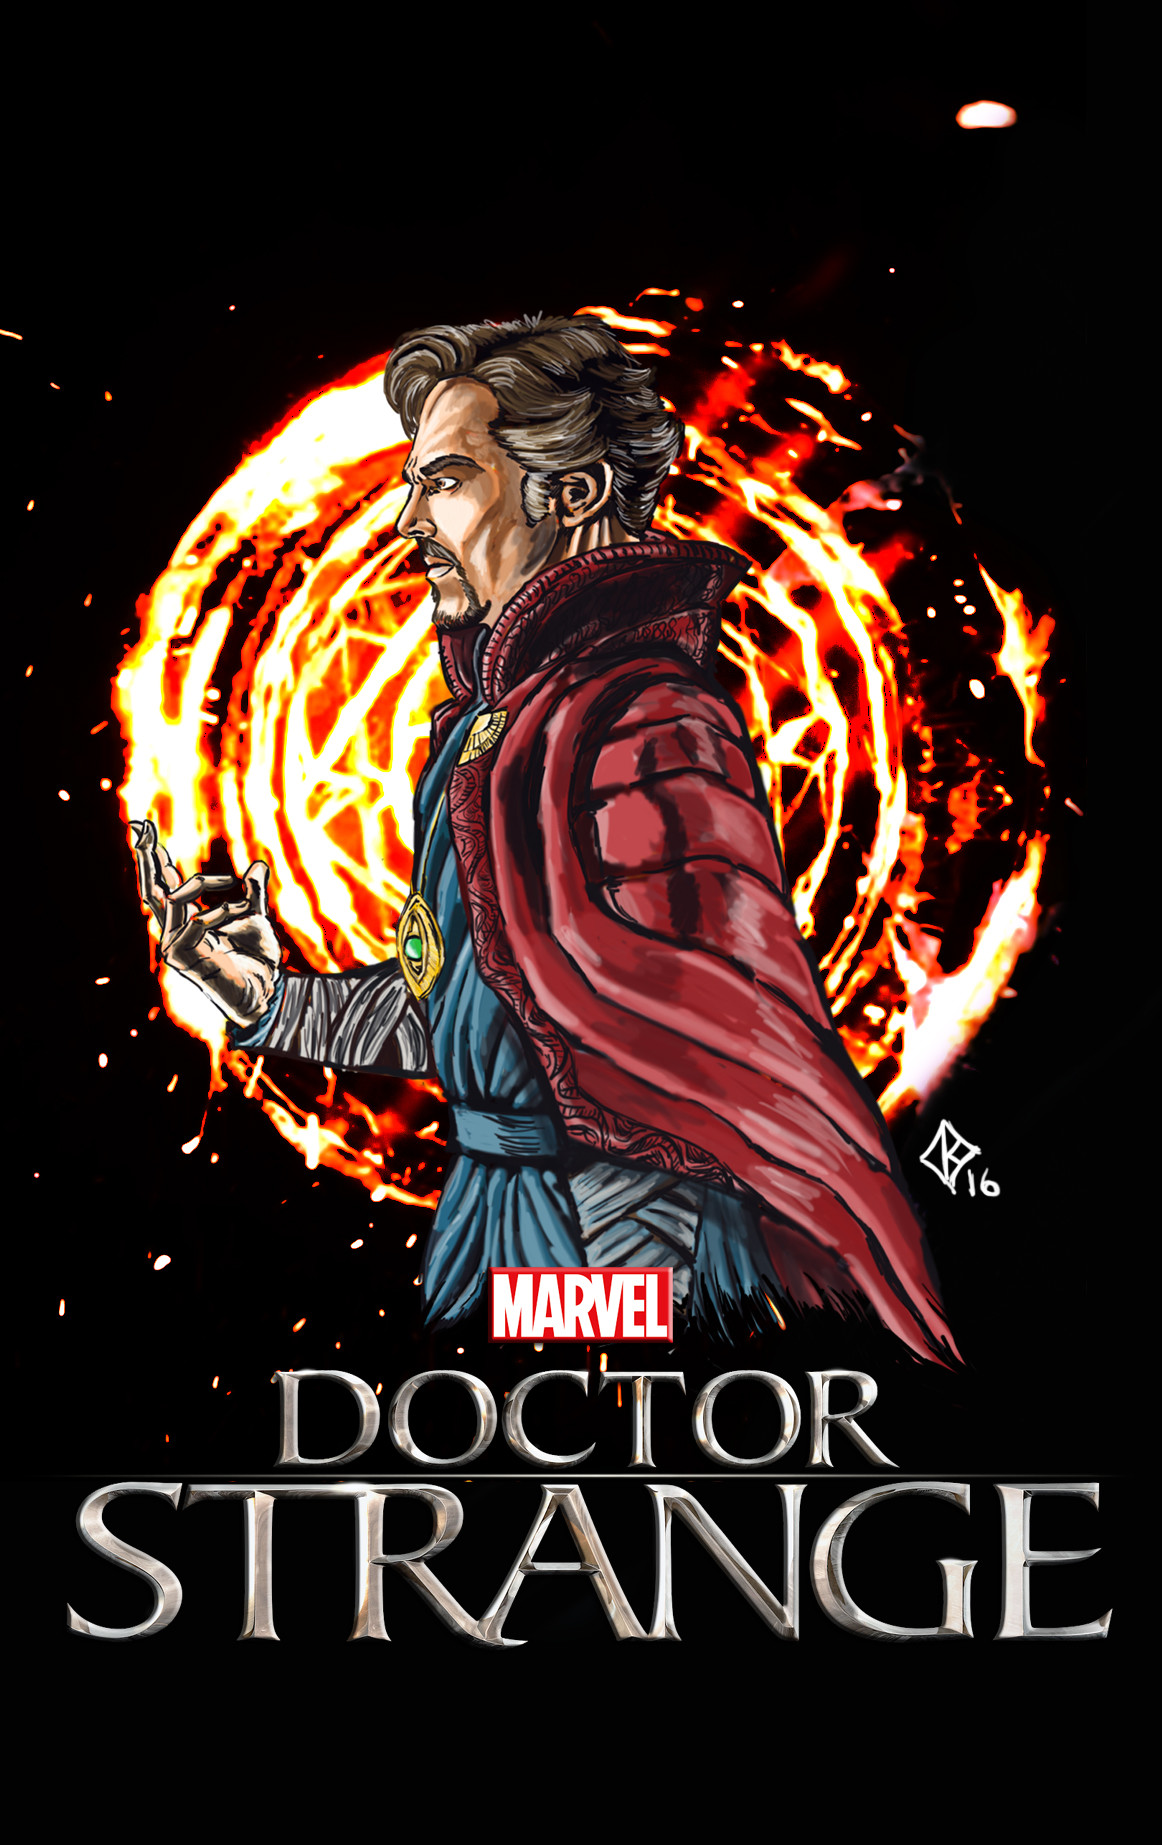 Doutor Estranho 2  Doctor strange marvel, Marvel art, Doctor strange poster